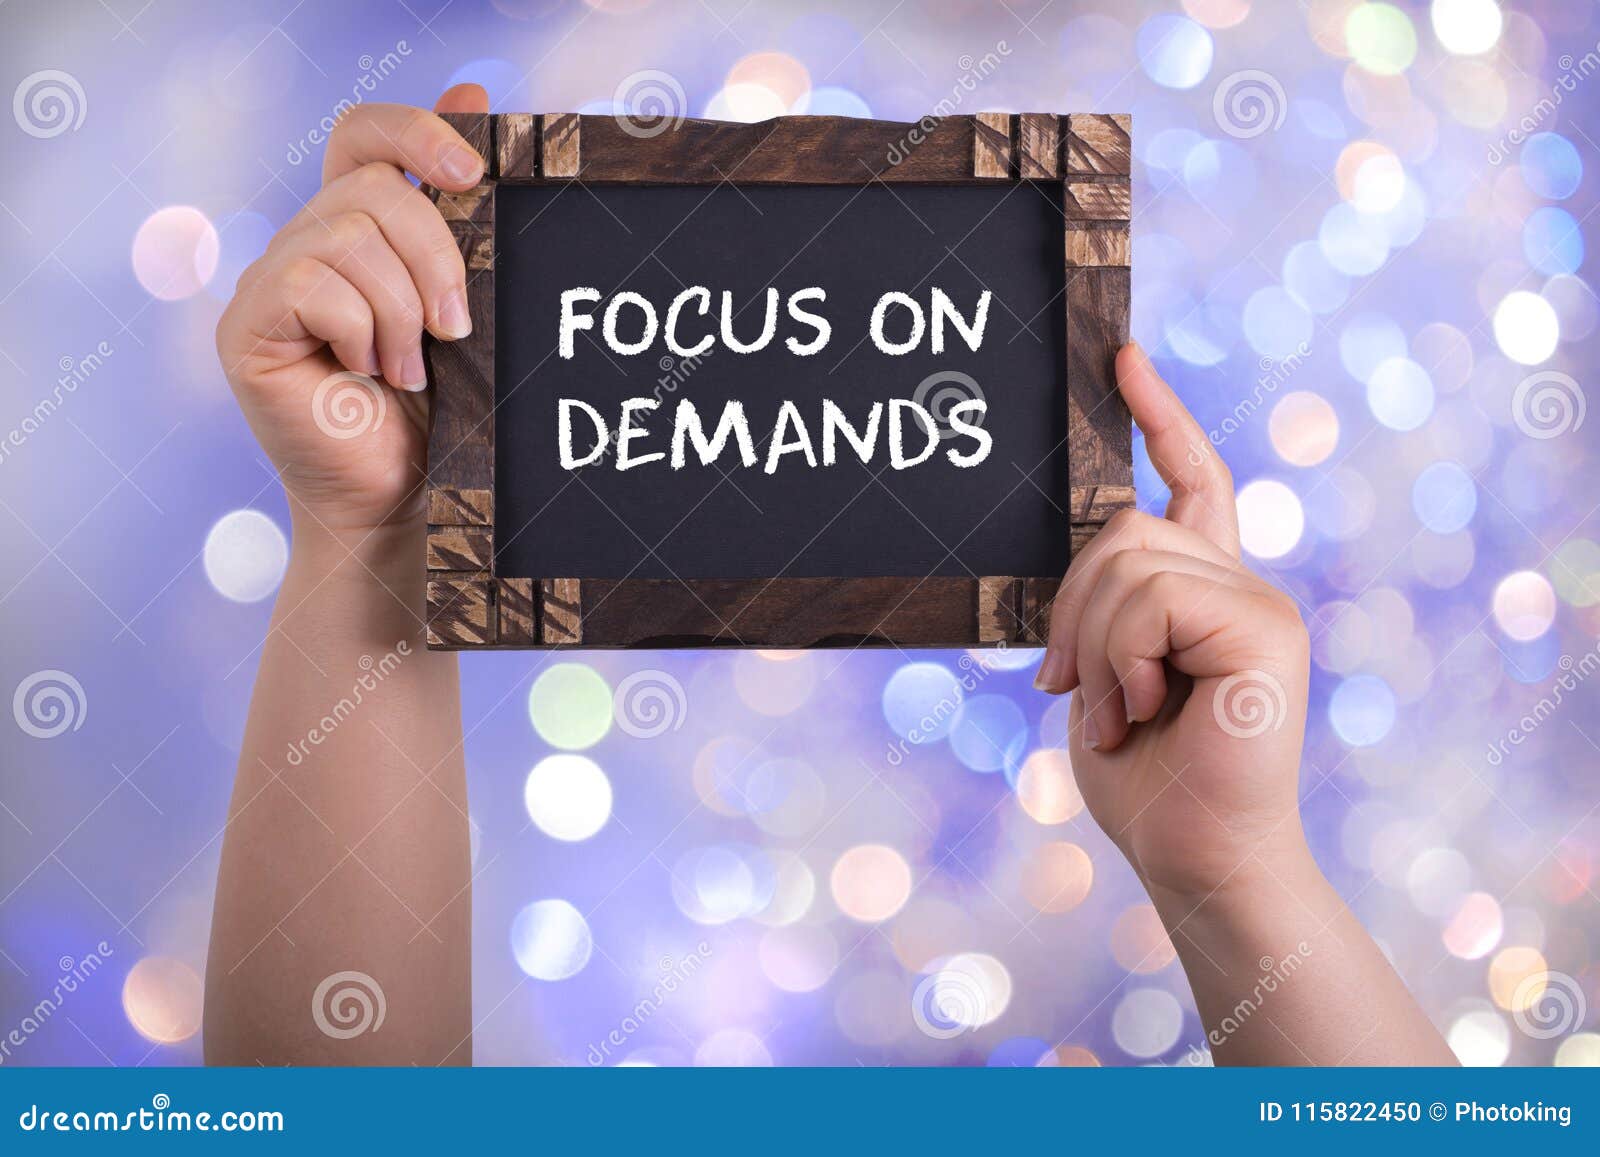 focus on demands